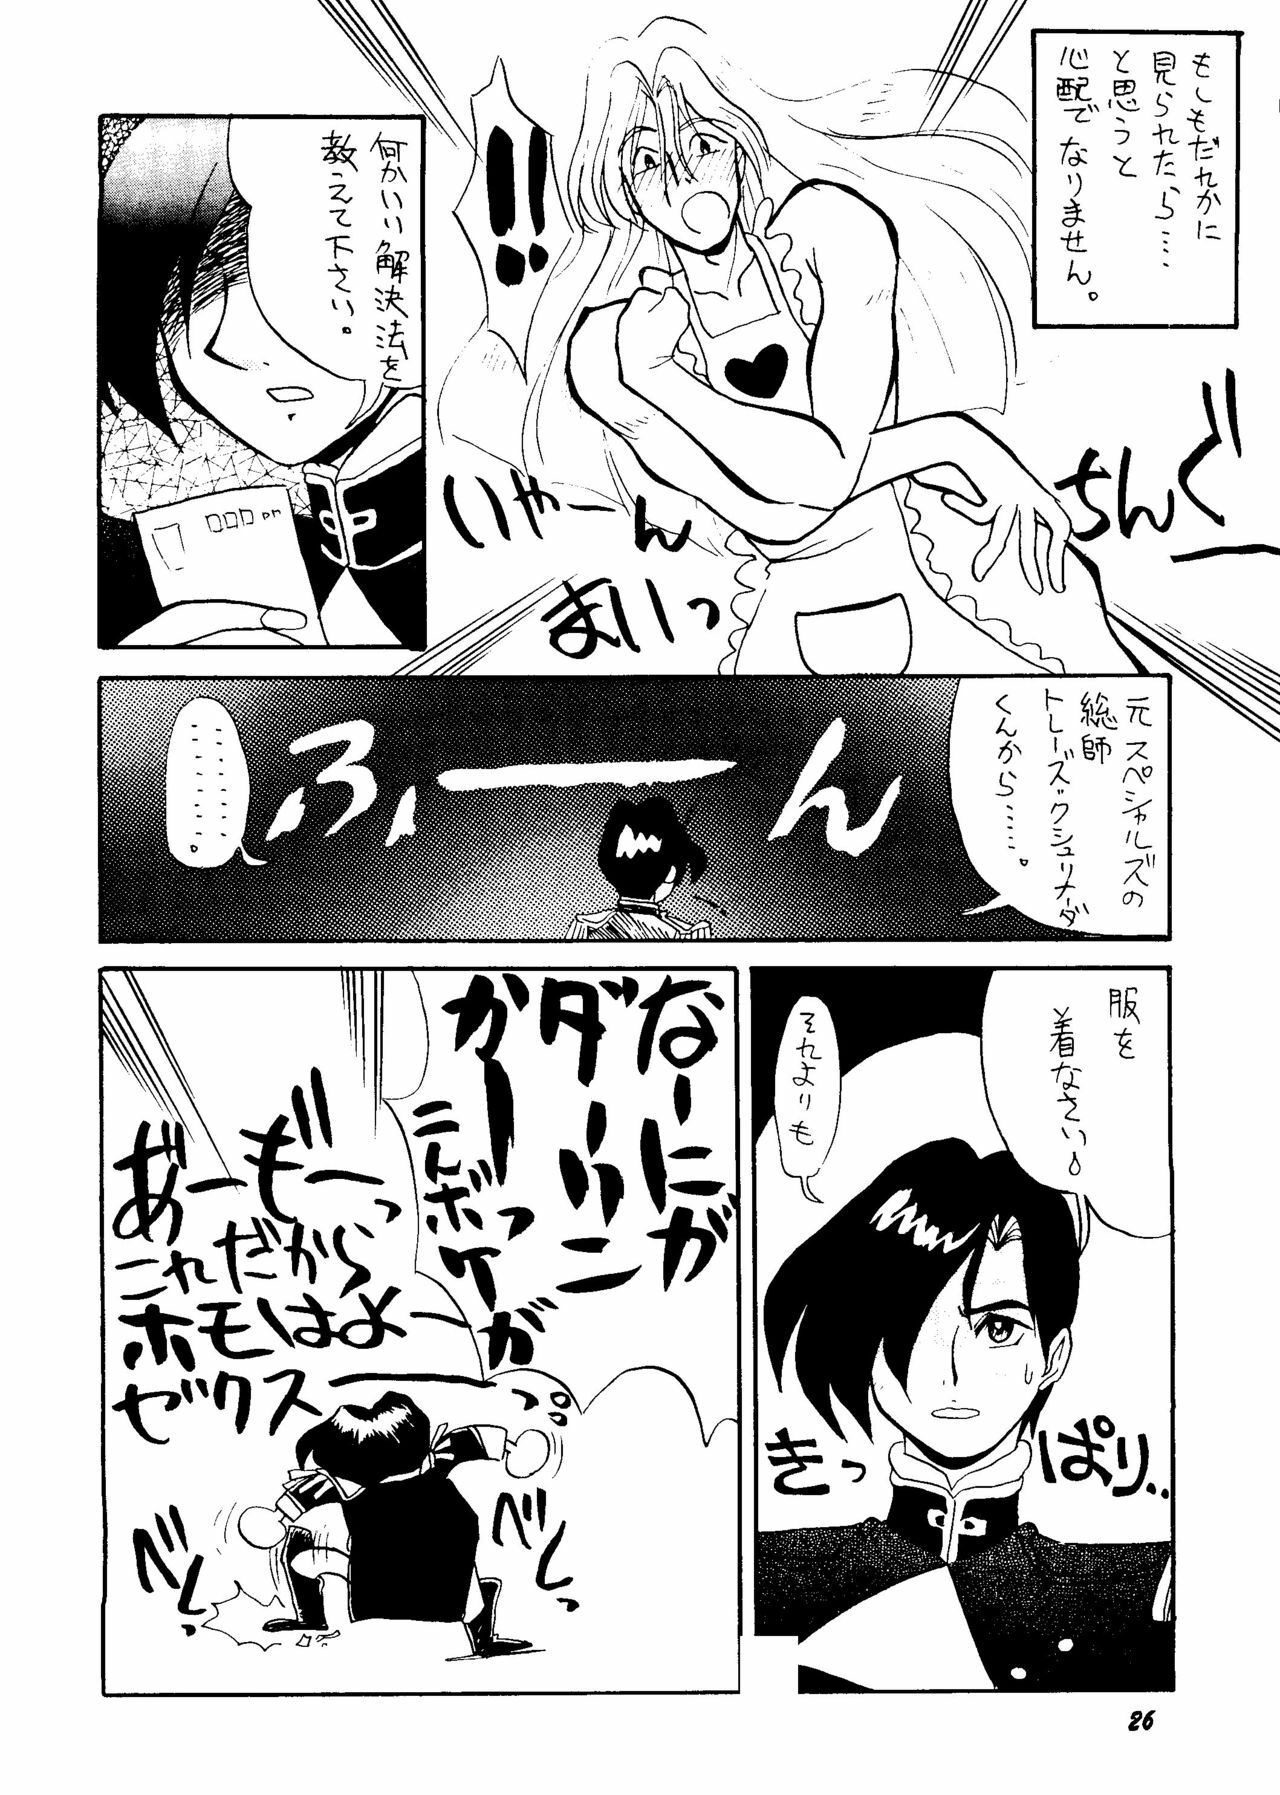 [Rupinasu Touzokudan & Cha Cha Cha Brothers] Shinu no wa Yatsura da (Gundam Wing) page 25 full